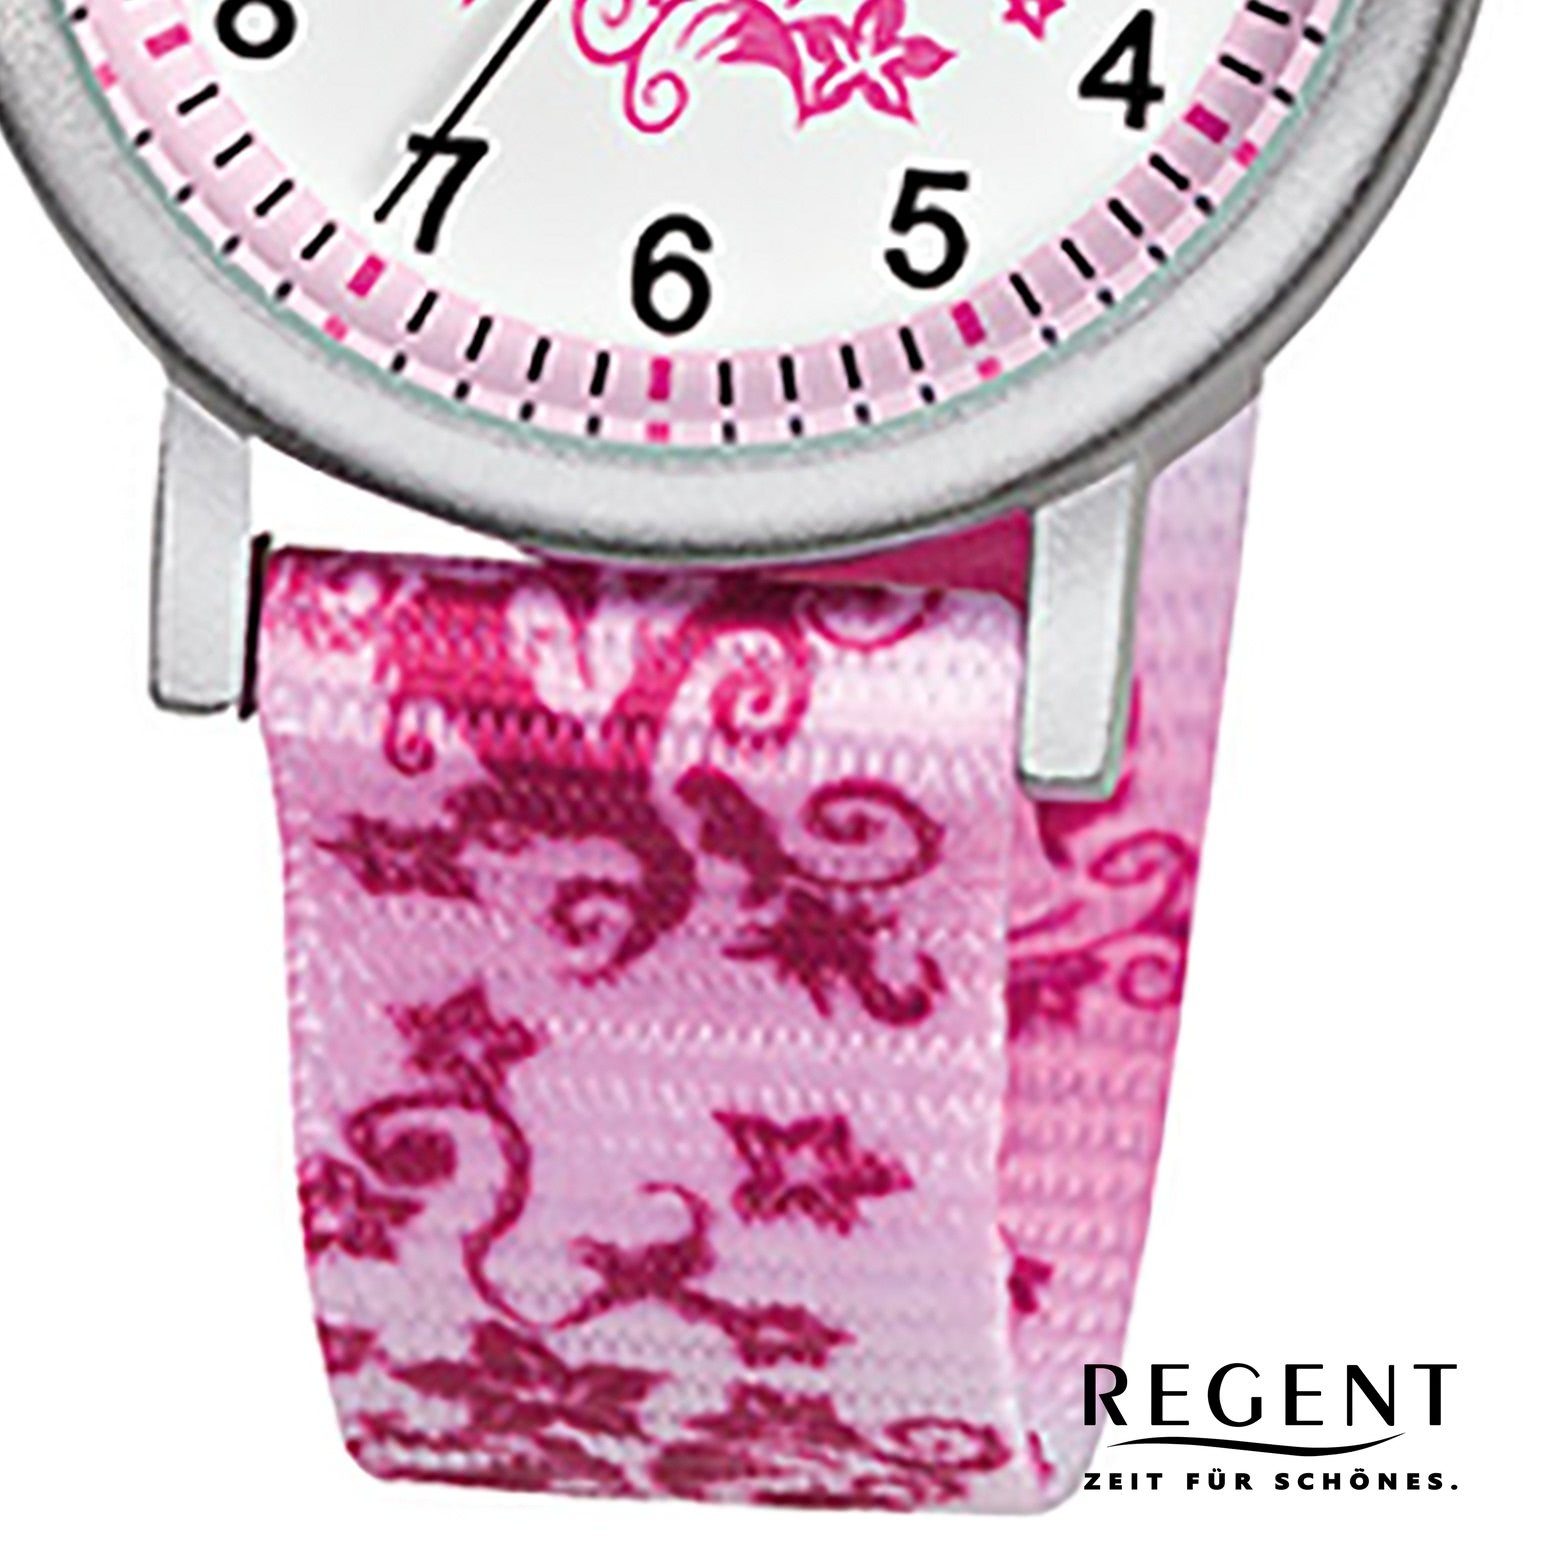 weiß, Kinder Textilarmband Kinder-Armbanduhr Quarzuhr Regent 29mm), rosa rund, Armbanduhr Regent pink klein (ca.